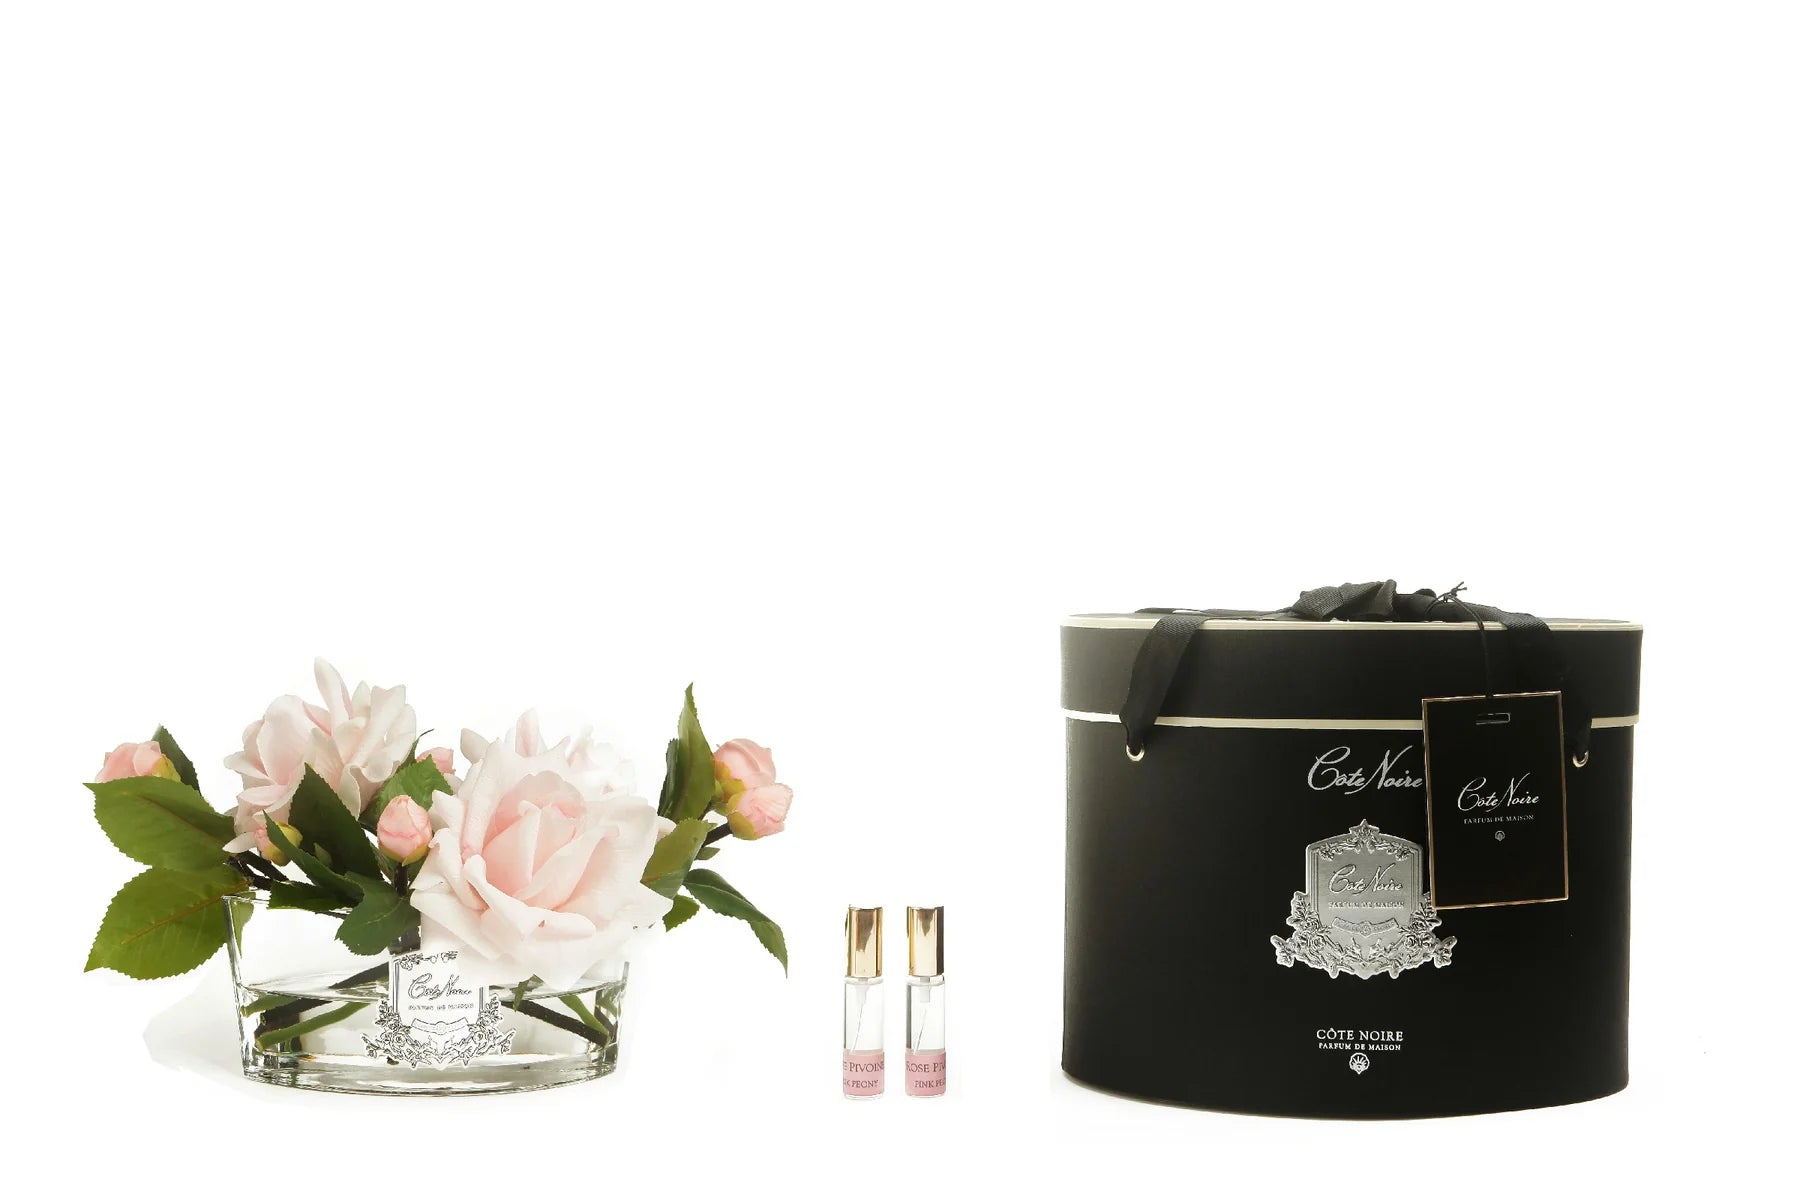 pinke rosen in hellem, ovalem glas mit silberner inschrift. daneben zwei parfumsprays und runde geschenkbox.